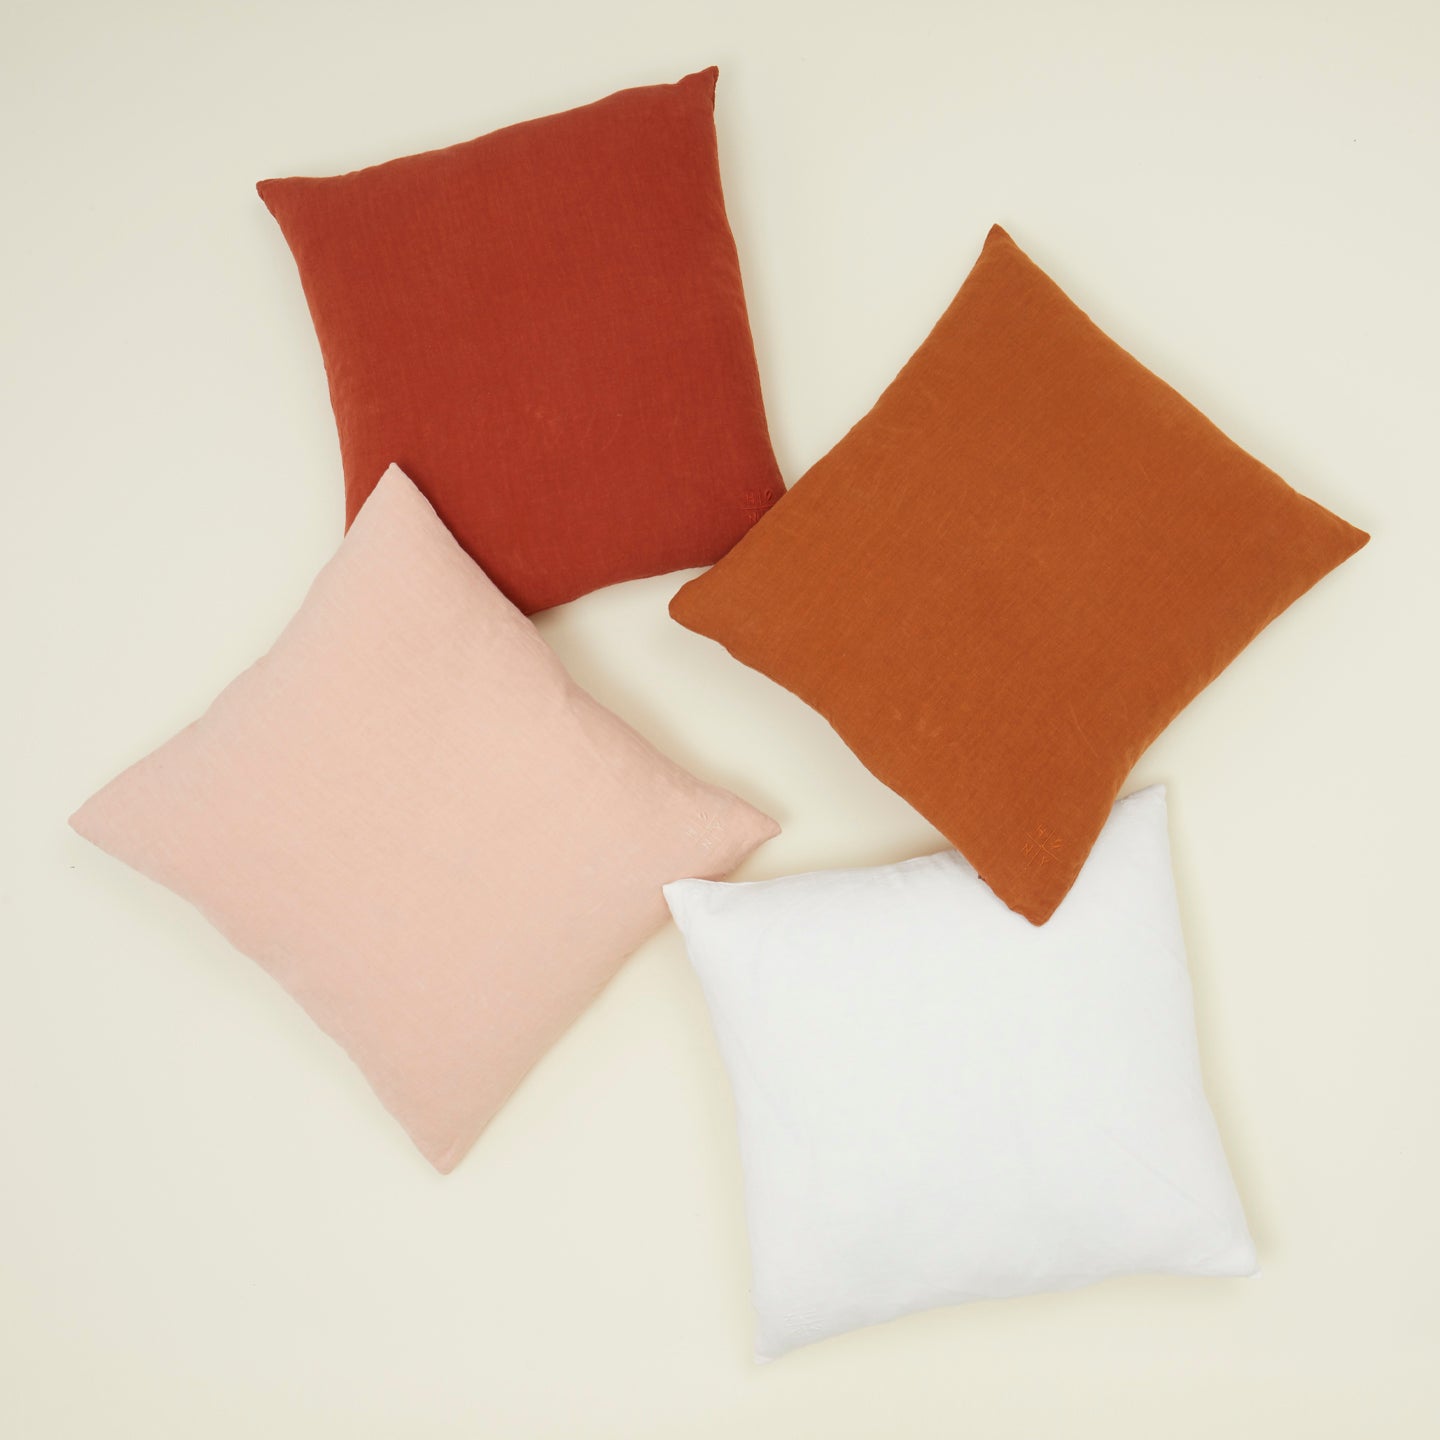 Simple Linen 12x22 Pillow - Rust